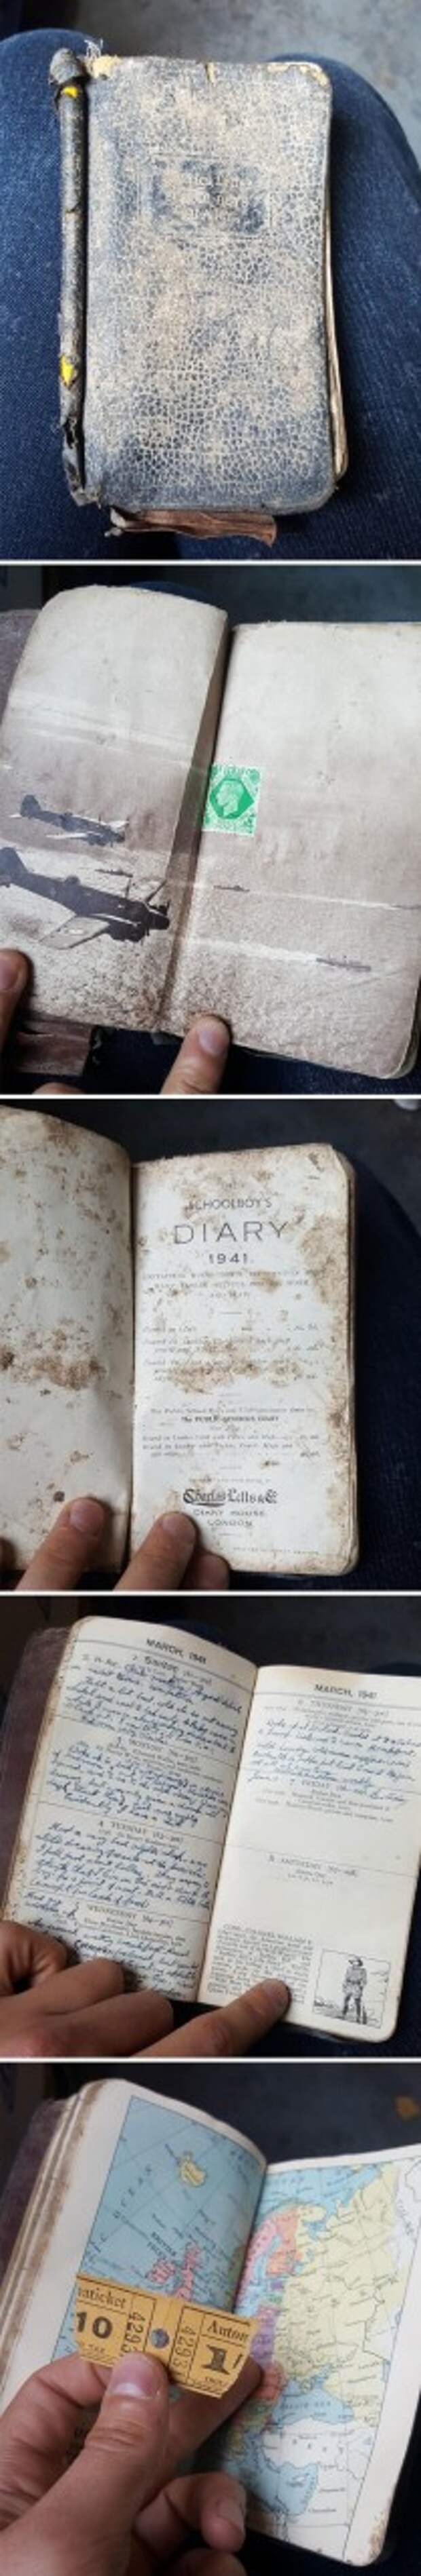 4. Заполненный дневник школьника, 1941 год, найден сотрудником компании по утилизации отходов Неожиданная находка, интересные вещи, интересные находки, находки, находки и открытия, не ждали, случайно